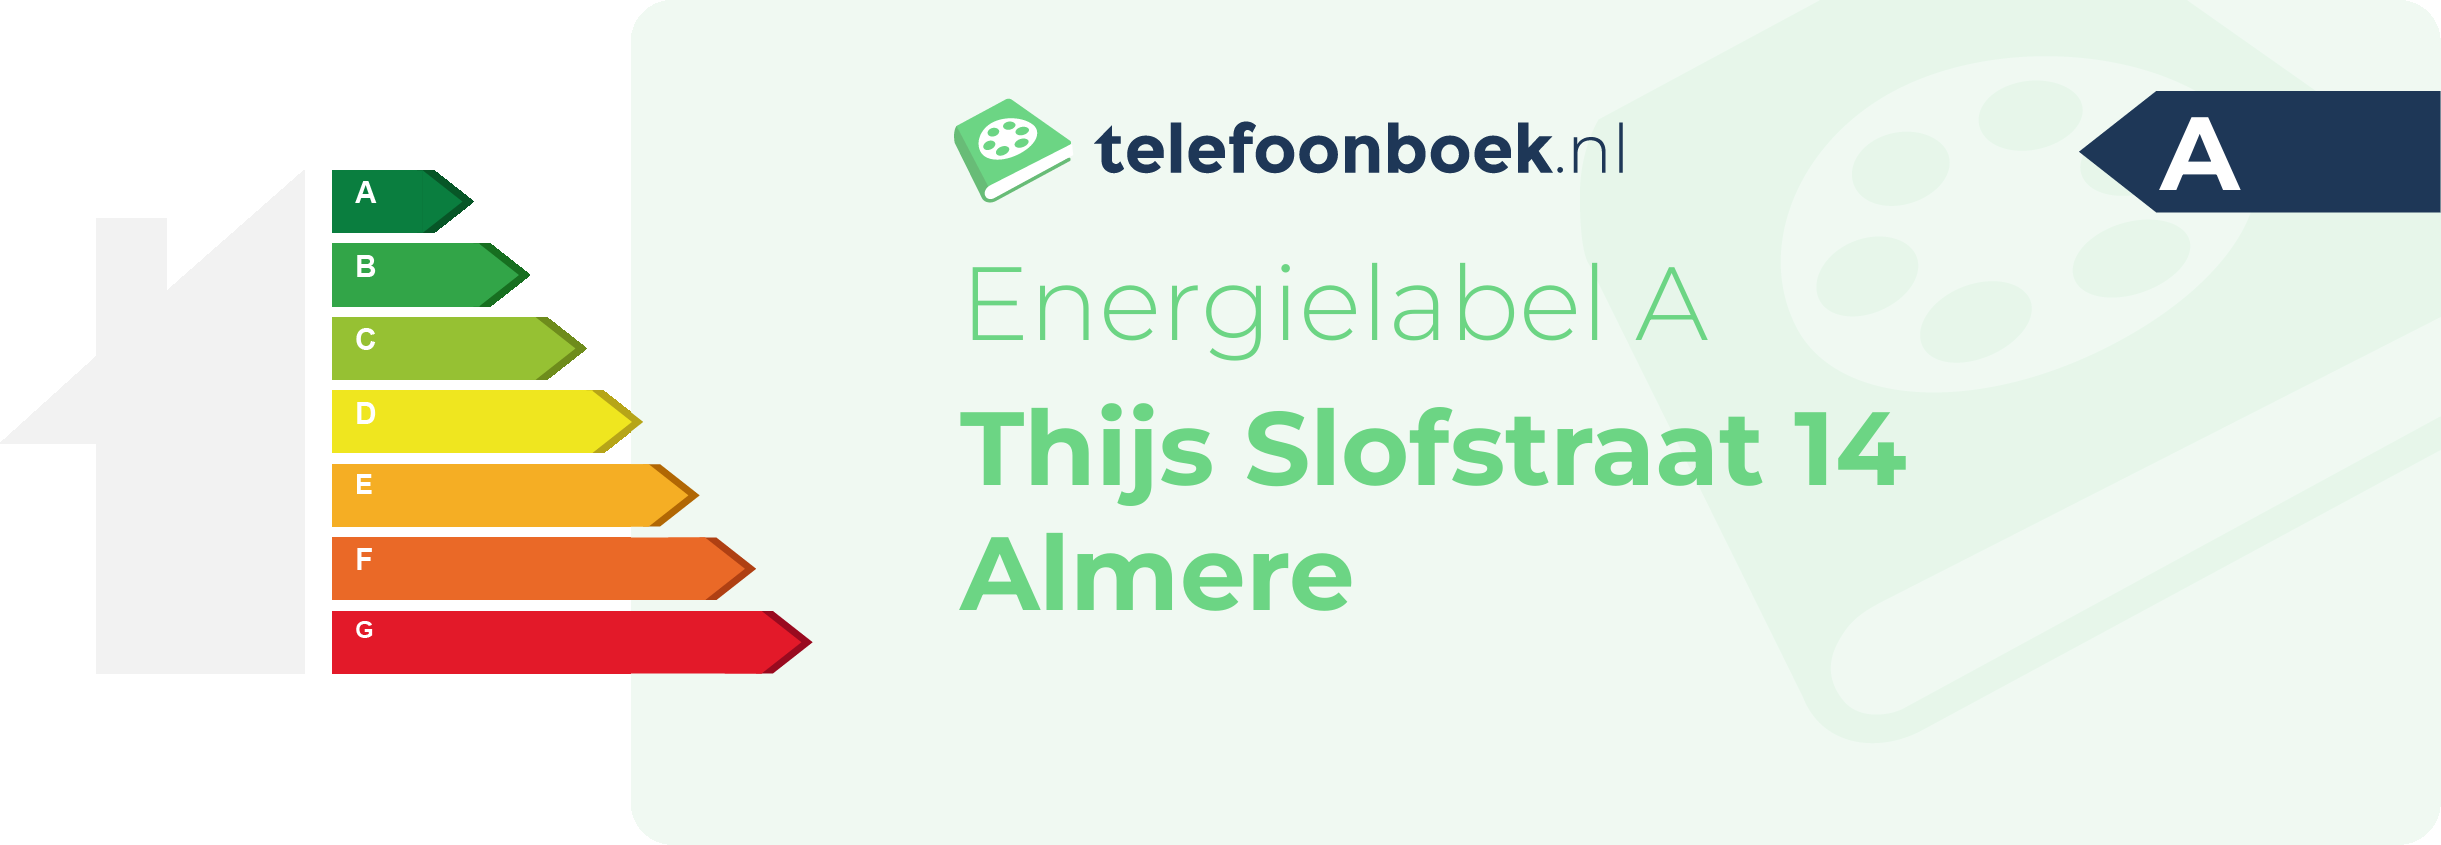 Energielabel Thijs Slofstraat 14 Almere